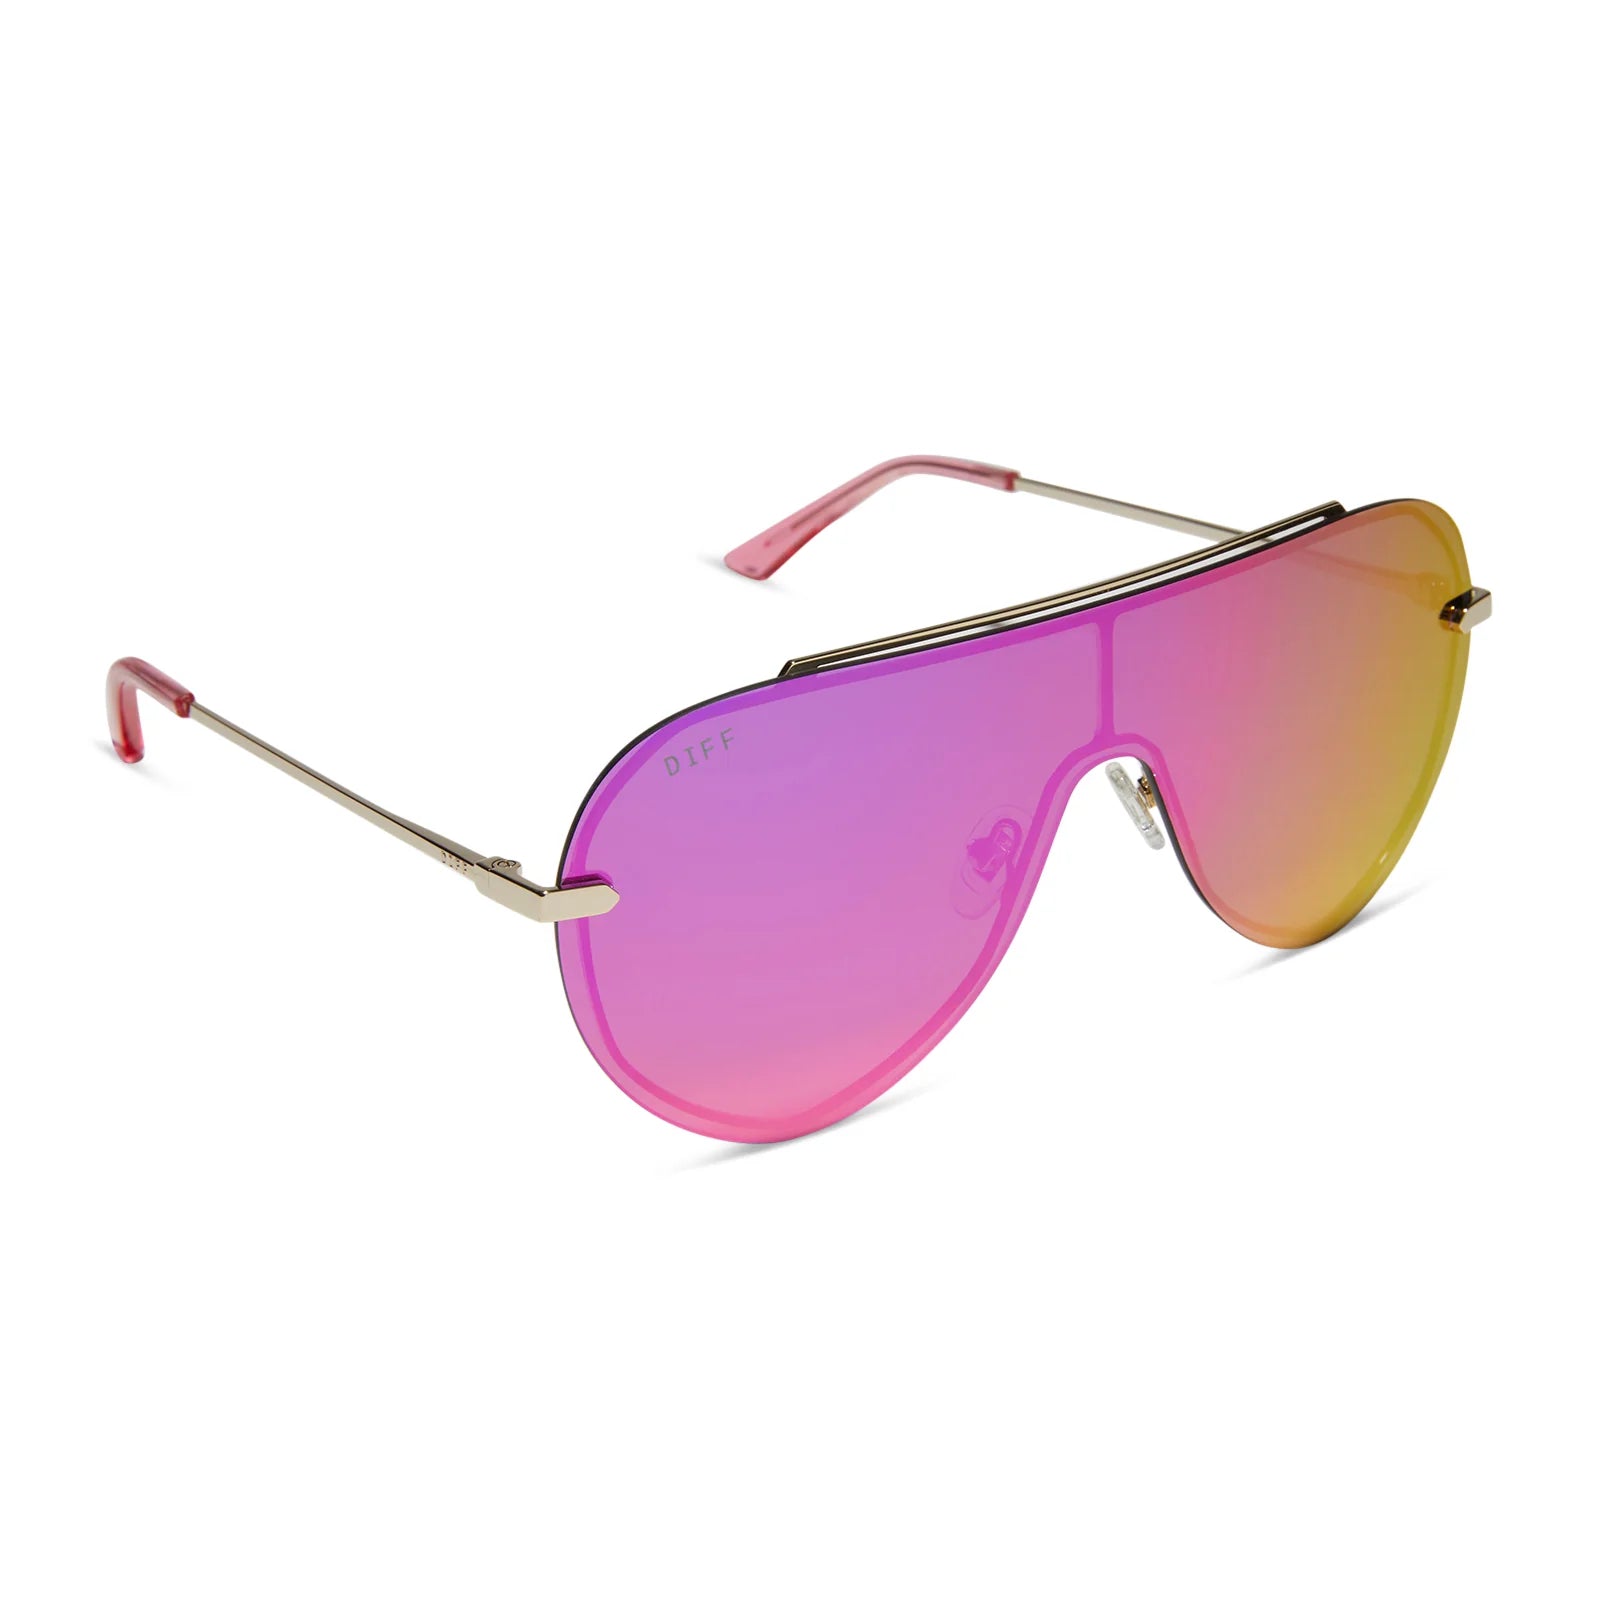 Imani Shield Sunglasses | DIFF